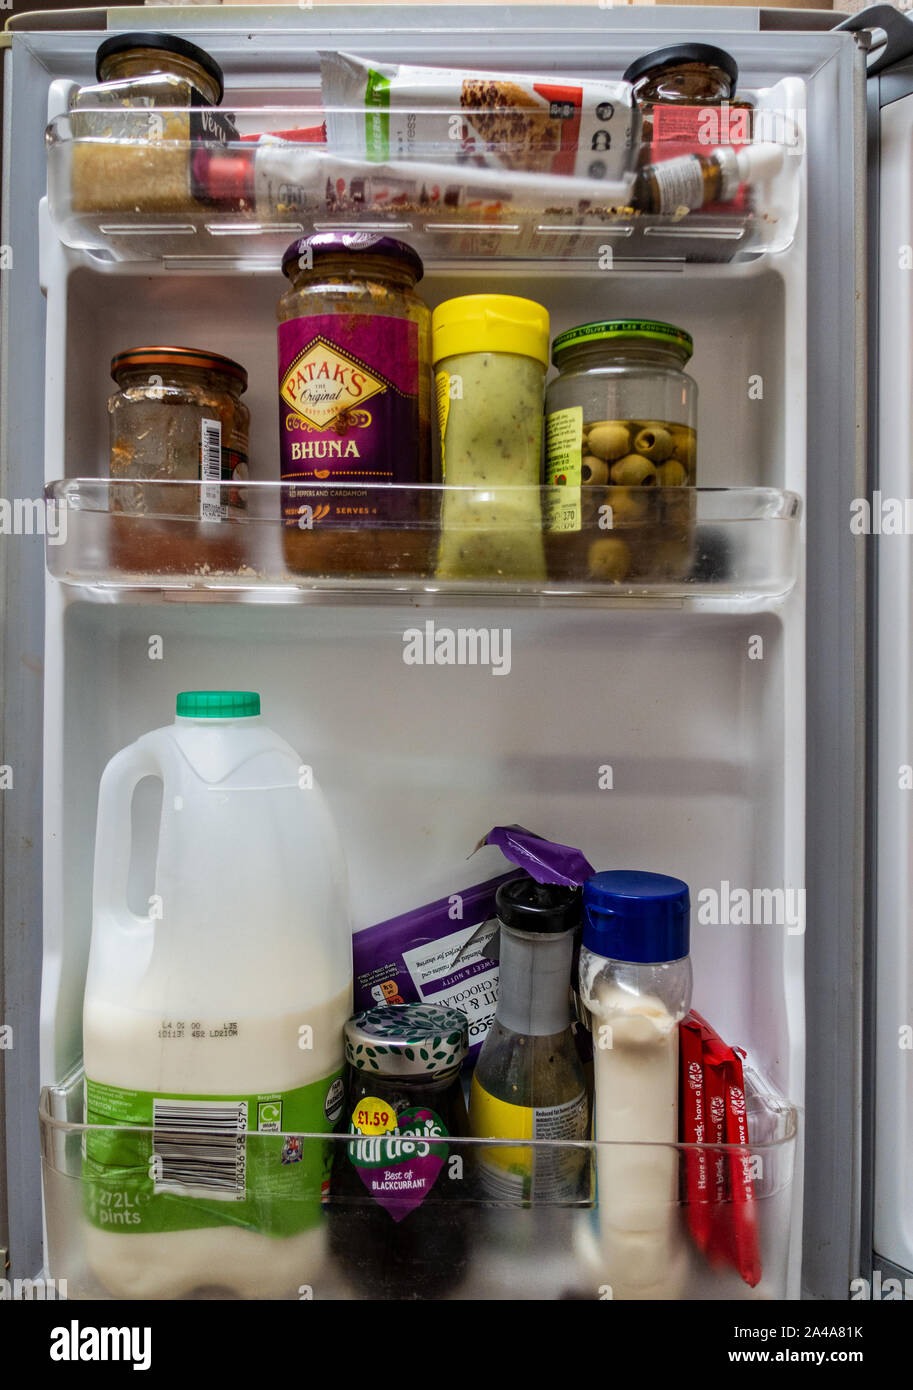 https://c8.alamy.com/comp/2A4A81K/close-up-of-refrigerator-door-contents-2A4A81K.jpg